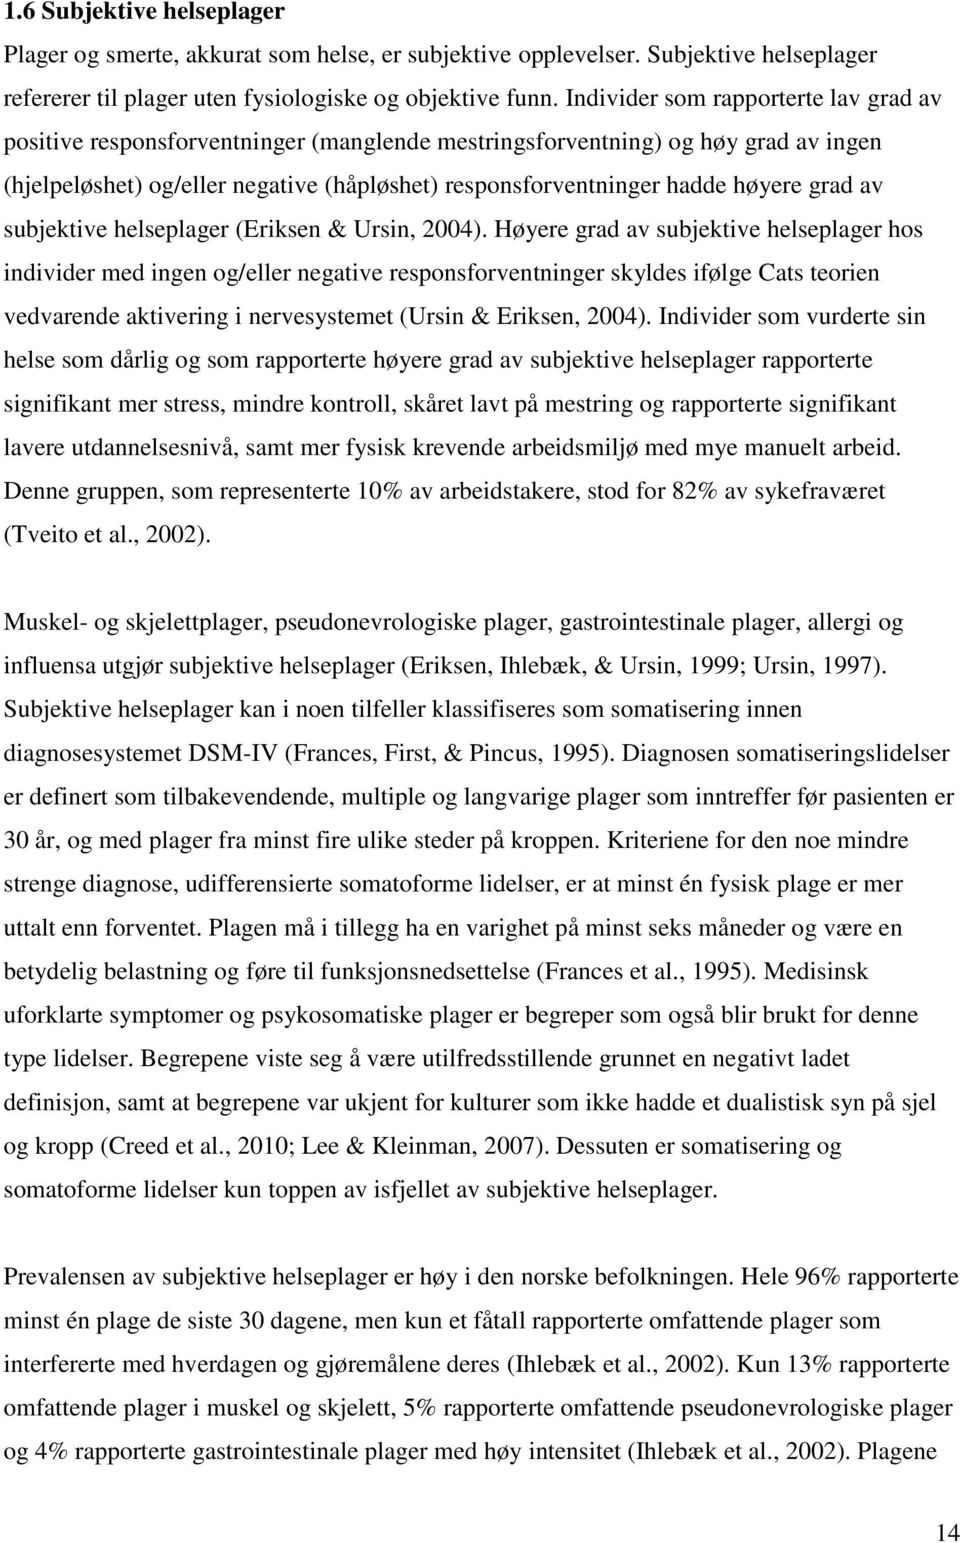 høyere grad av subjektive helseplager (Eriksen & Ursin, 2004).